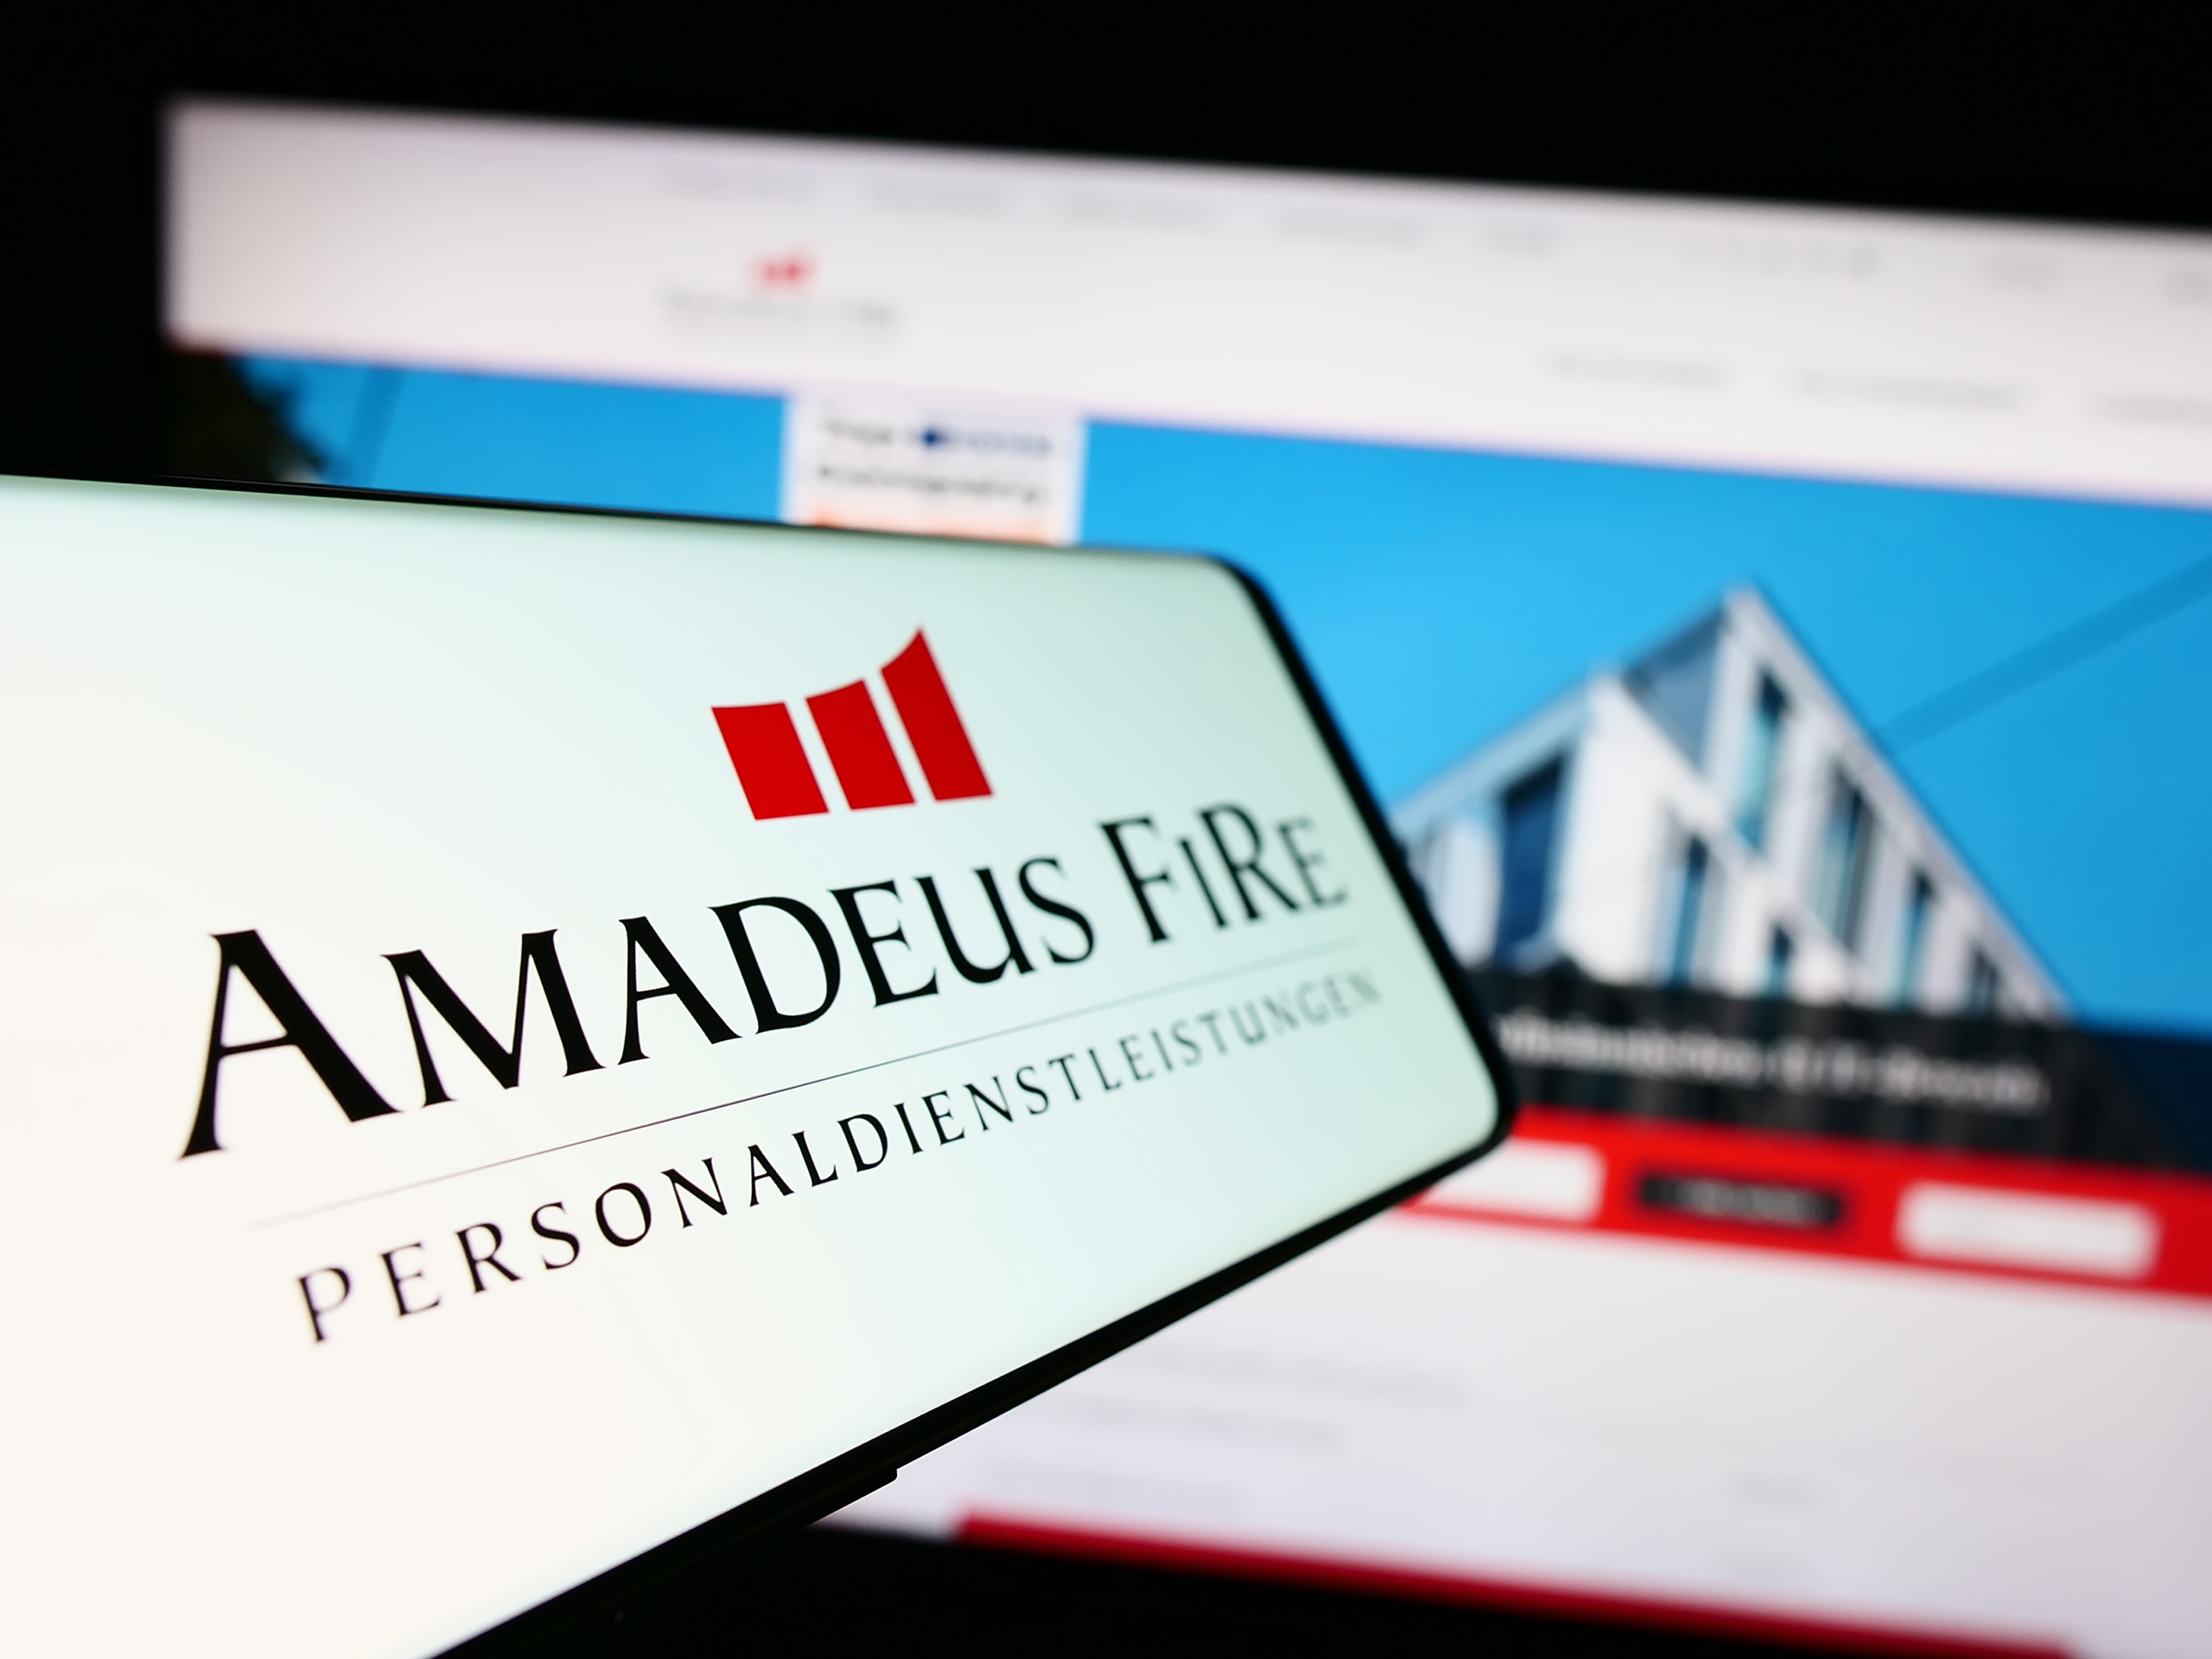 Nebenwerte Depotblog: Anpassung der Kauforder bei Amadeus Fire: Kauf 80 Stück Amadeus Fire AG [AAD | WKN 509310 | ISIN DE0005093108] mit Limit 122,60 € auf Xetra